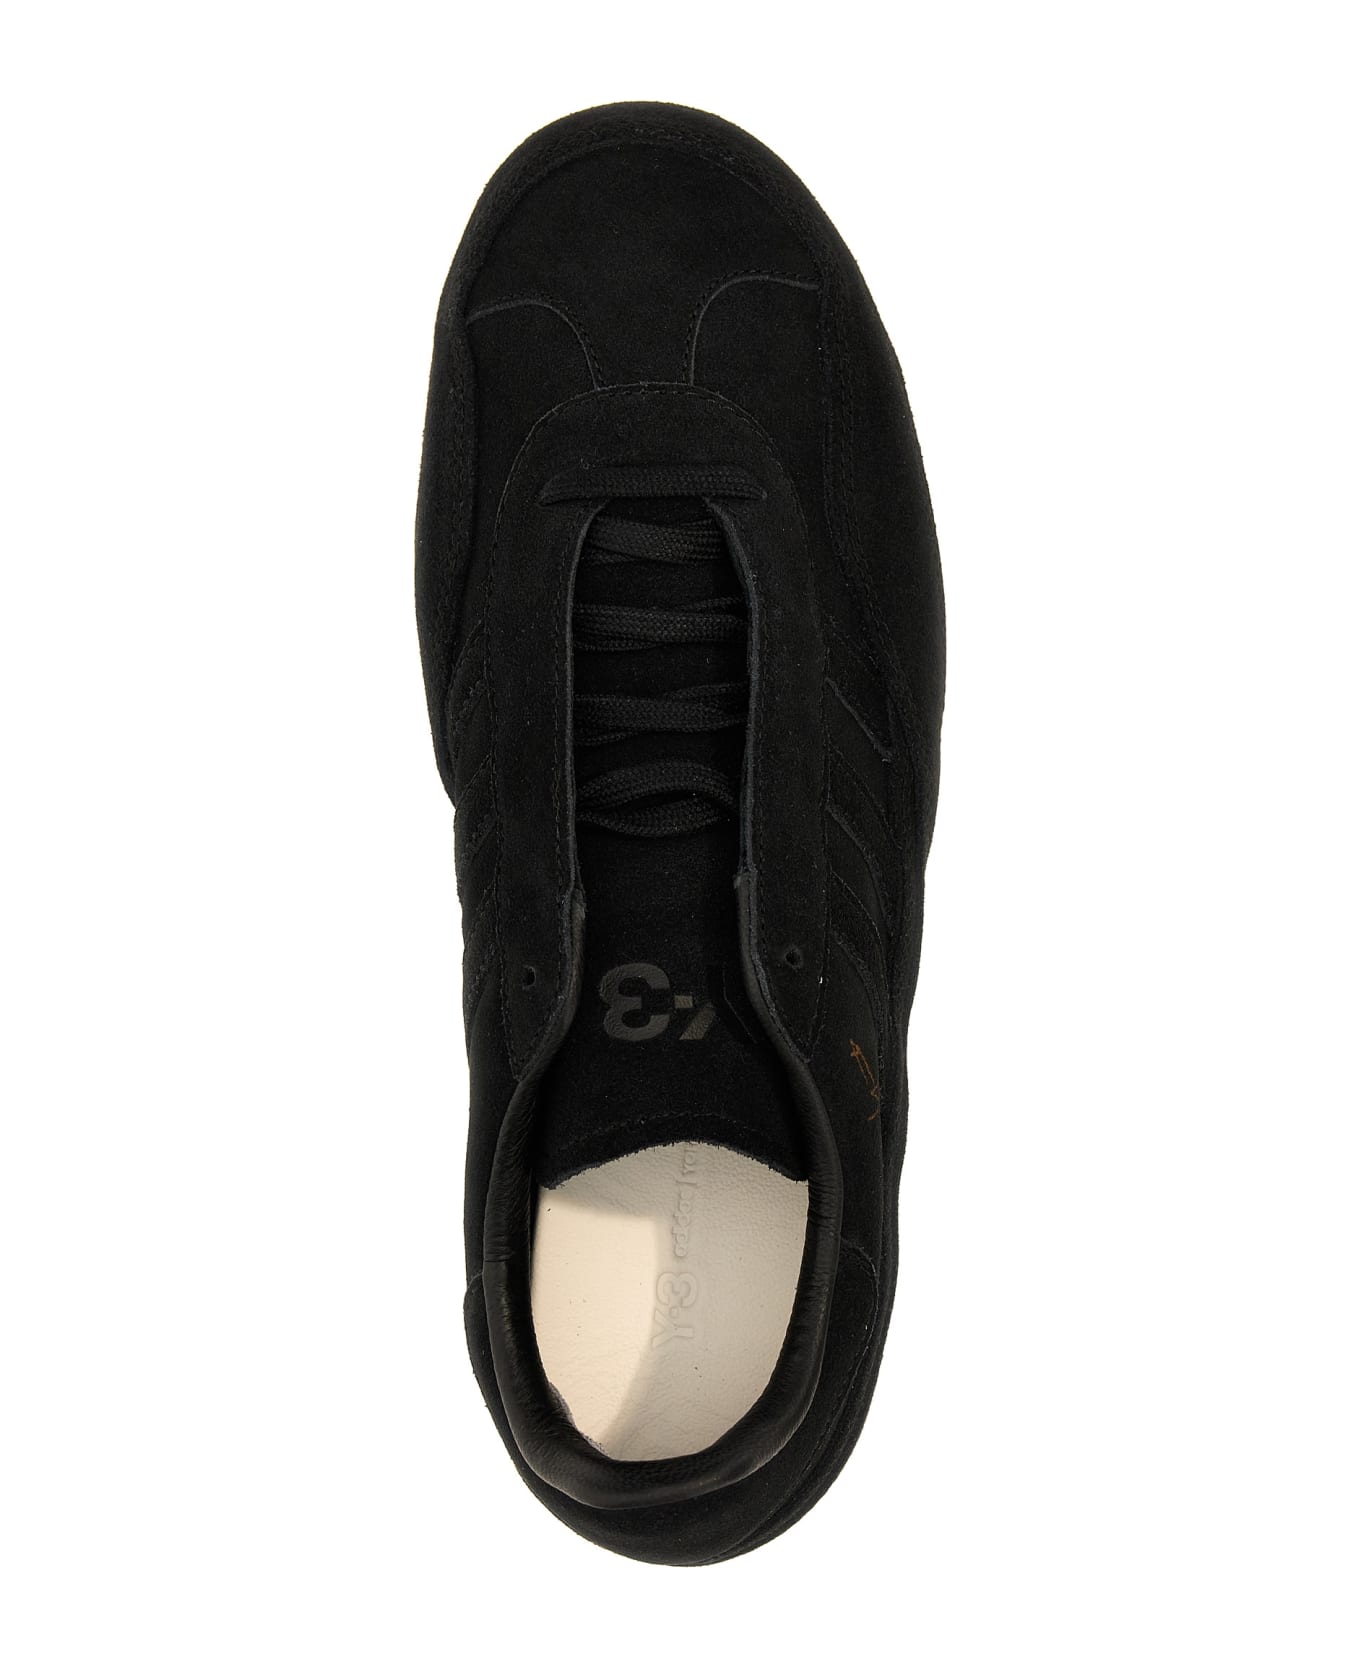 Y-3 'gazelle' Sneakers - Black   スニーカー